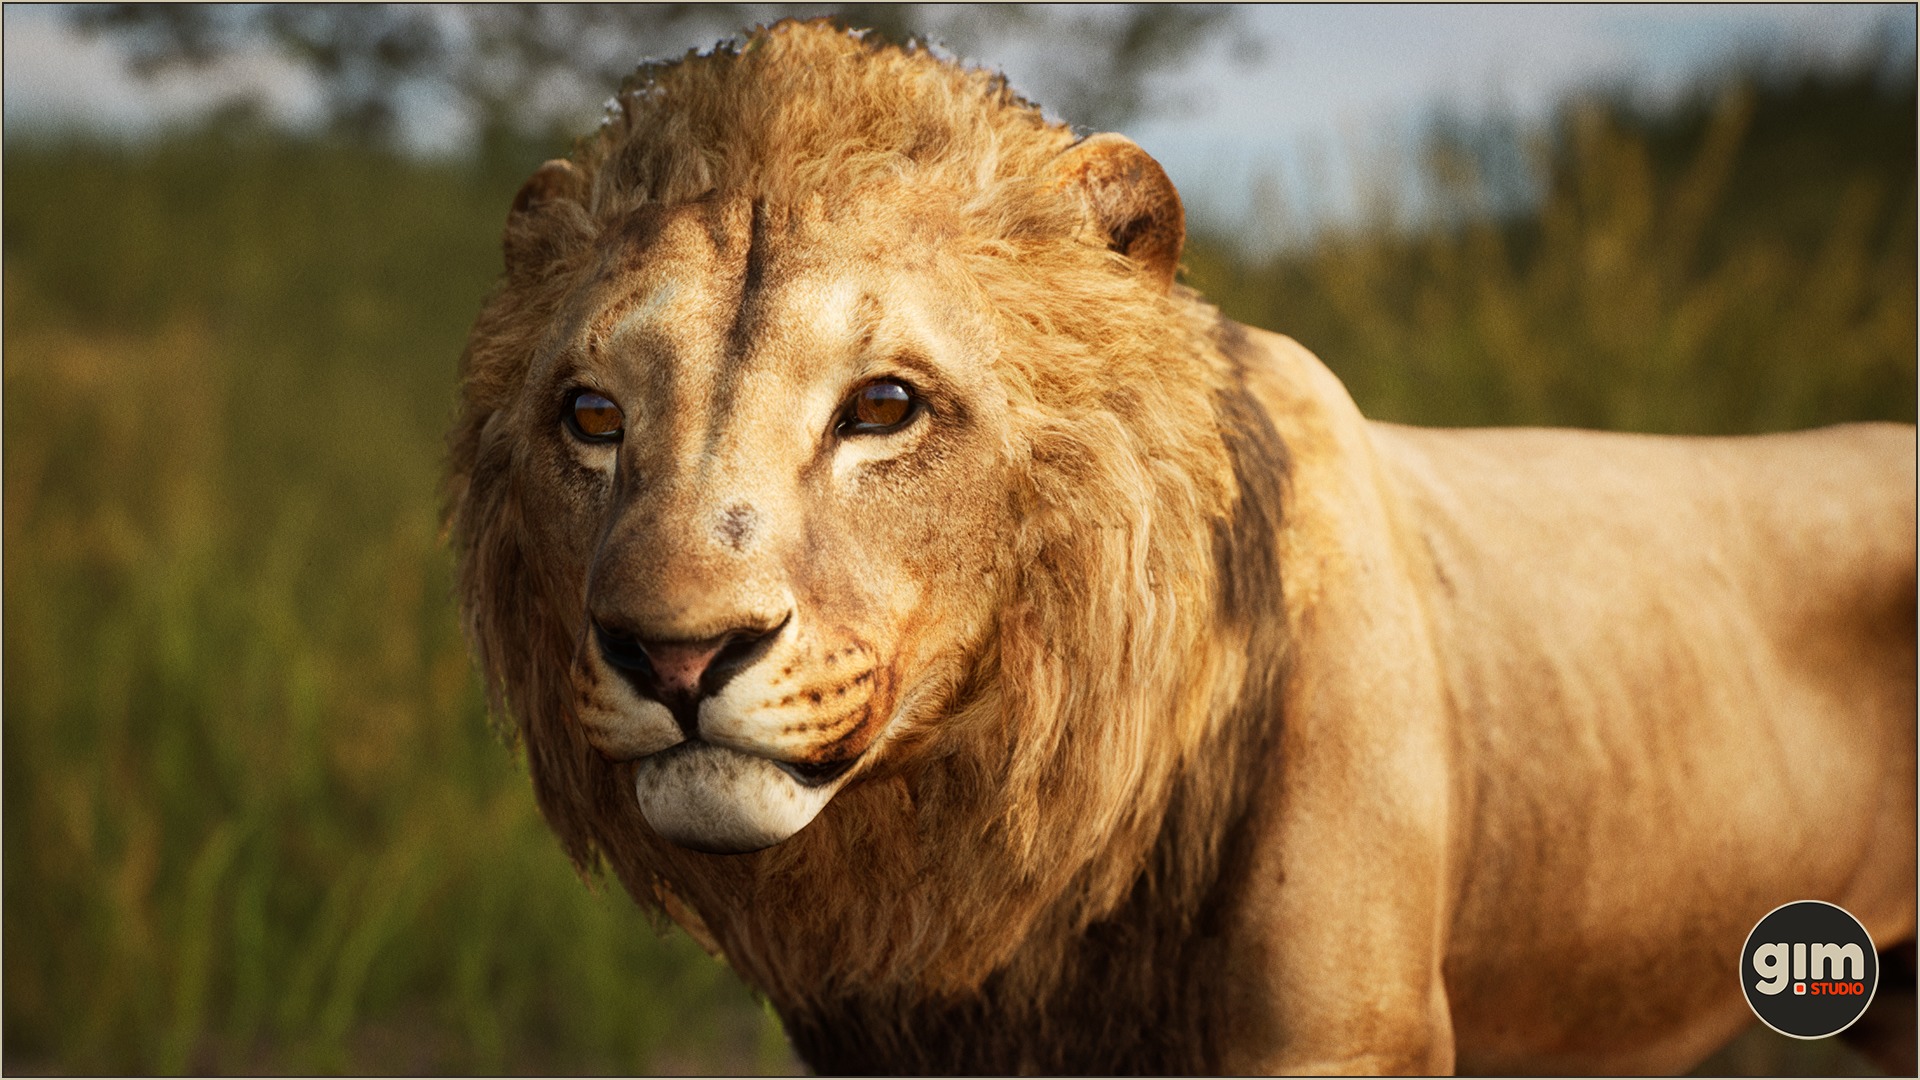 Male lion close-up shot.